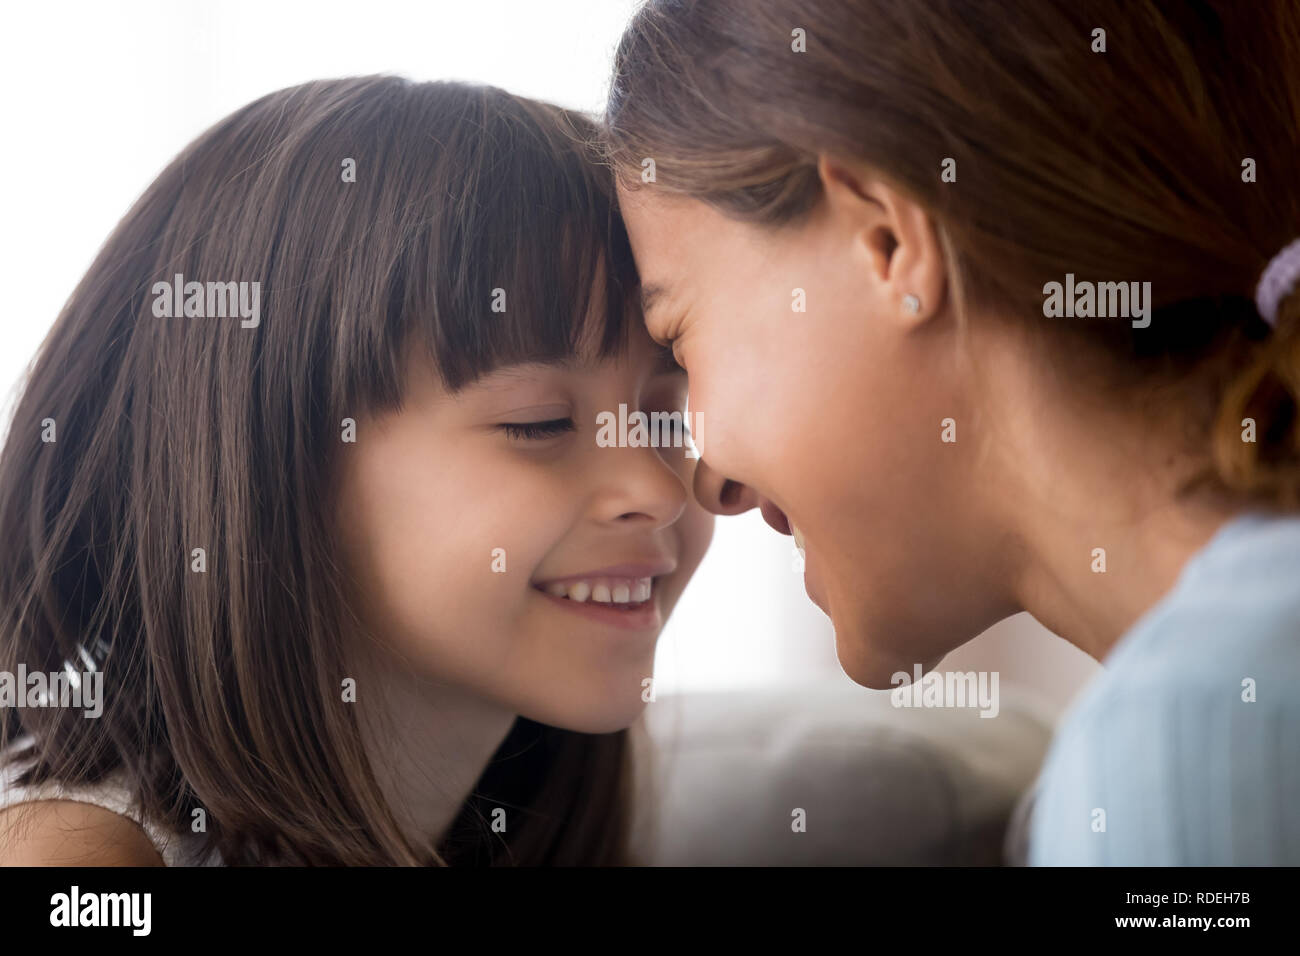 Petit enfant souriant tendrement fille de toucher leur front avec plaisir Banque D'Images